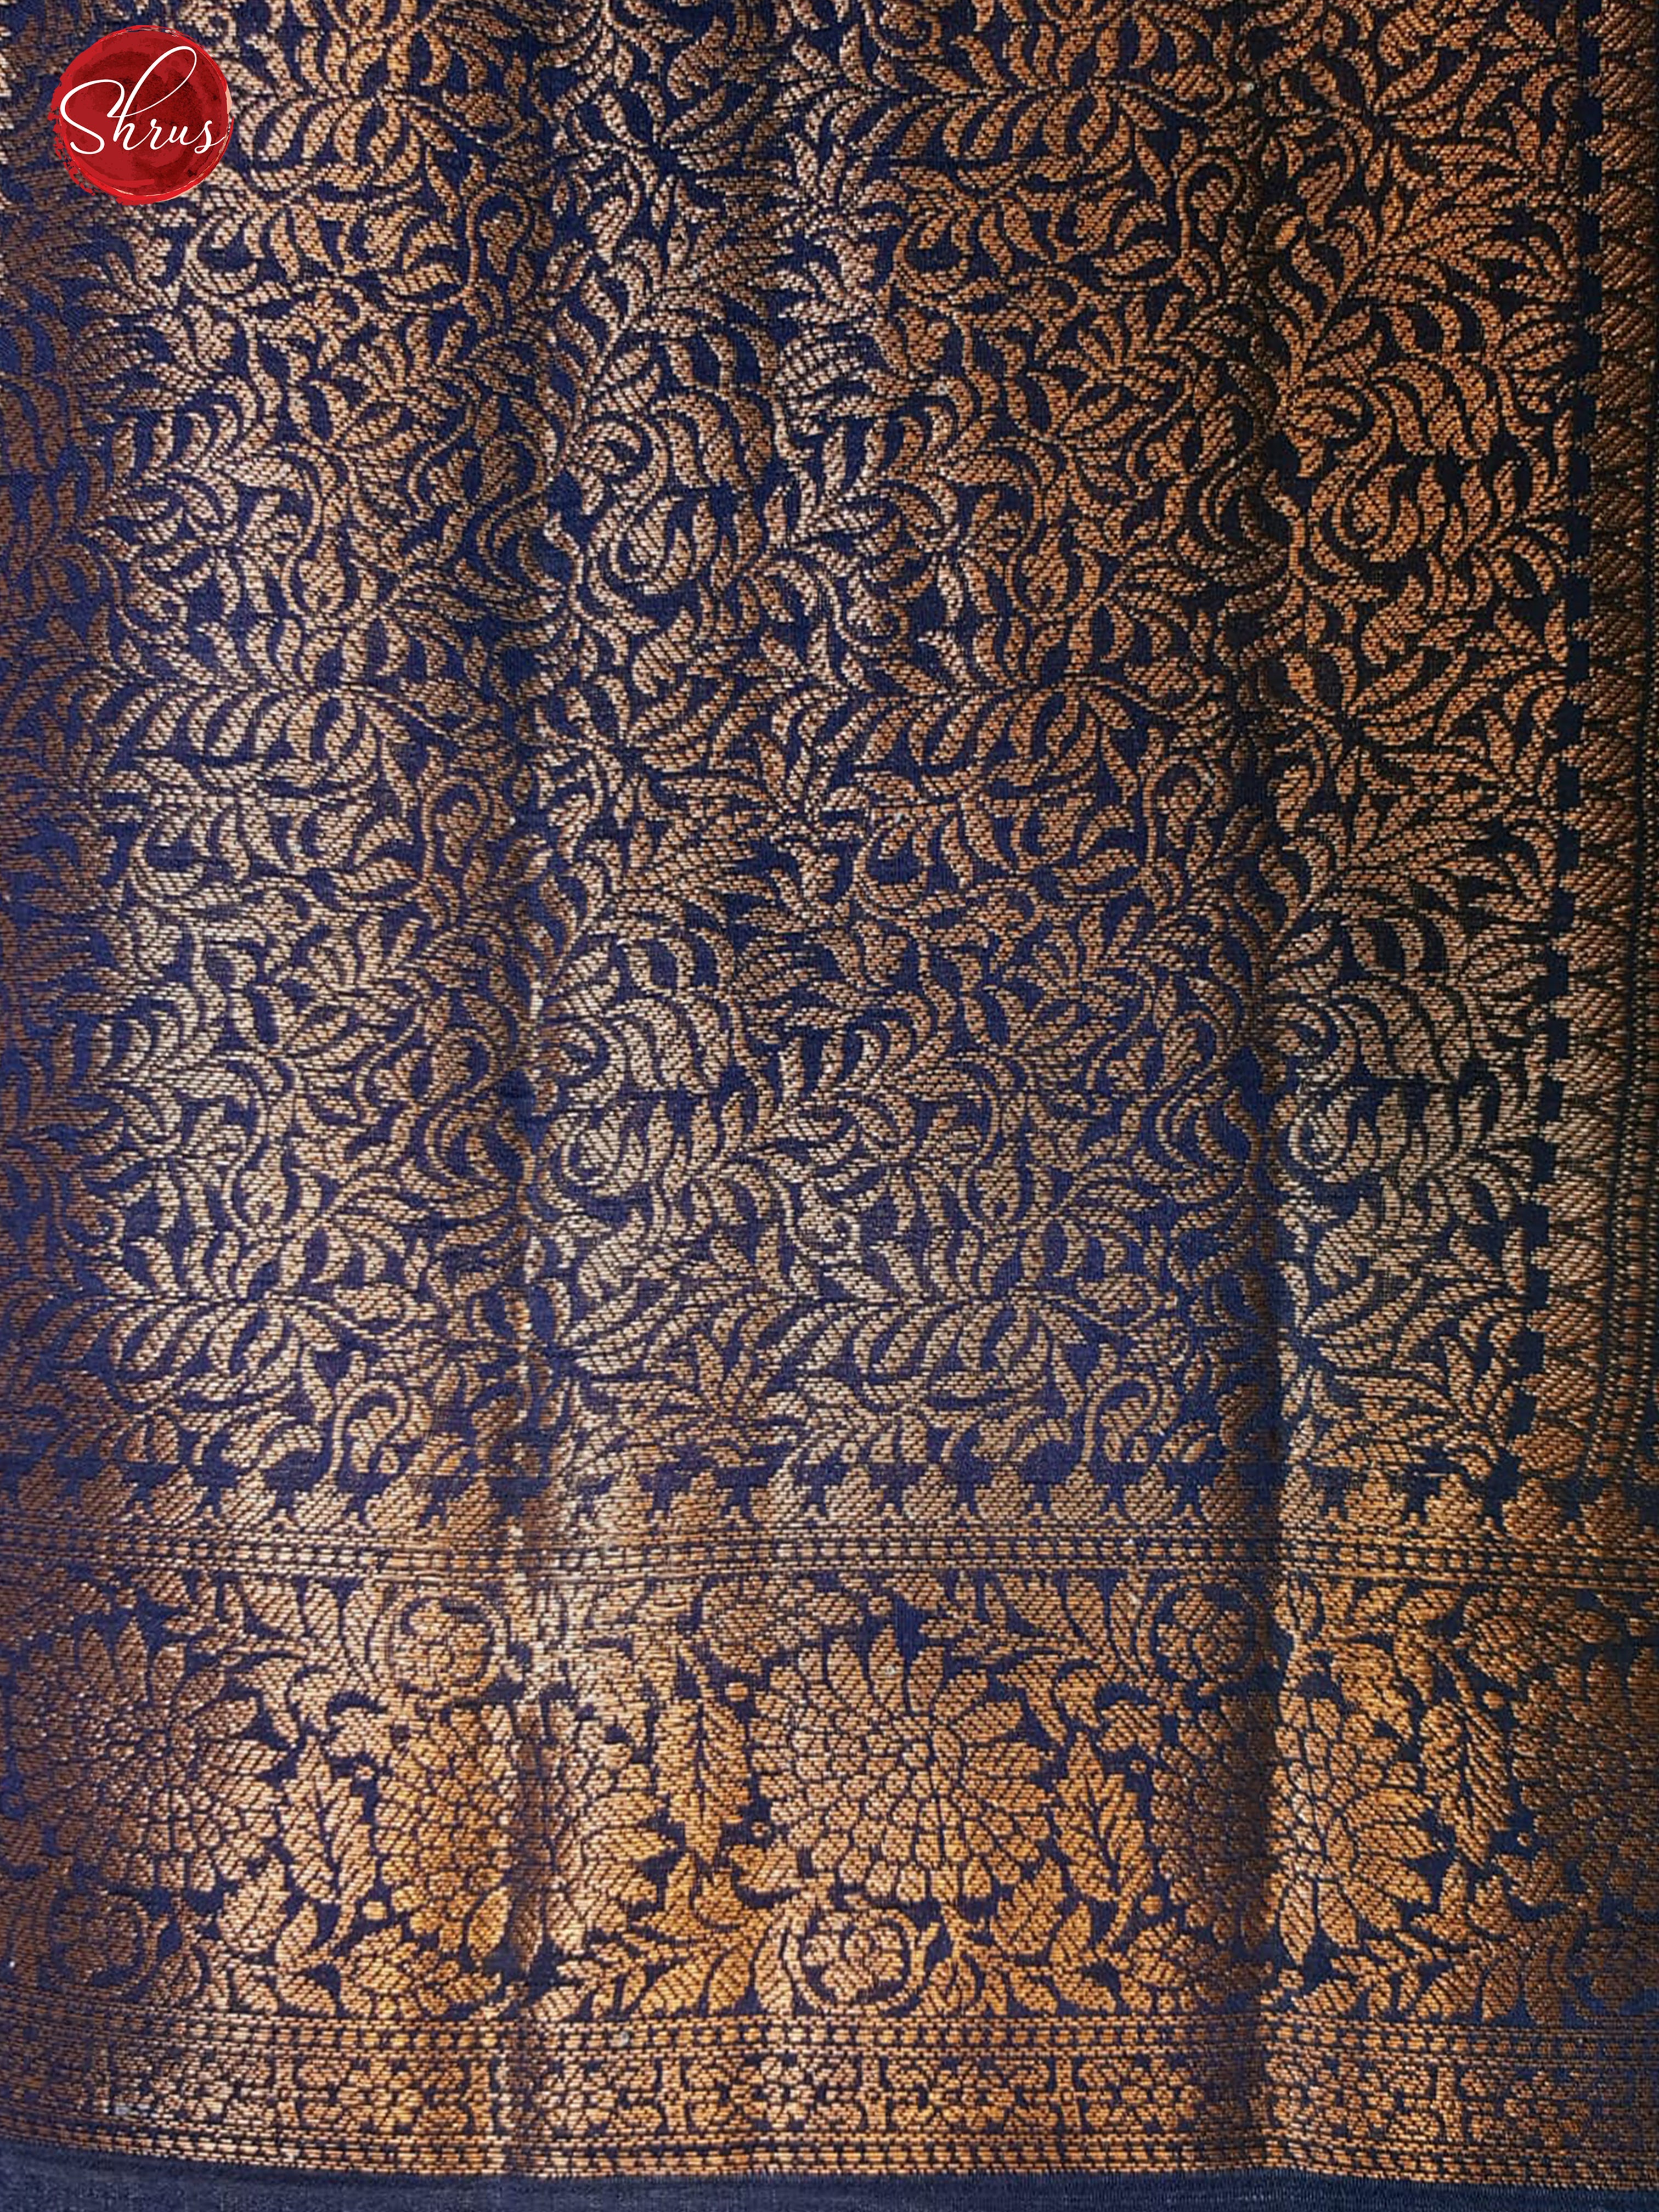 Teal & Blue - Chiniya Silk with Zari woven floral jaal on the body & Zari Border - Shop on ShrusEternity.com